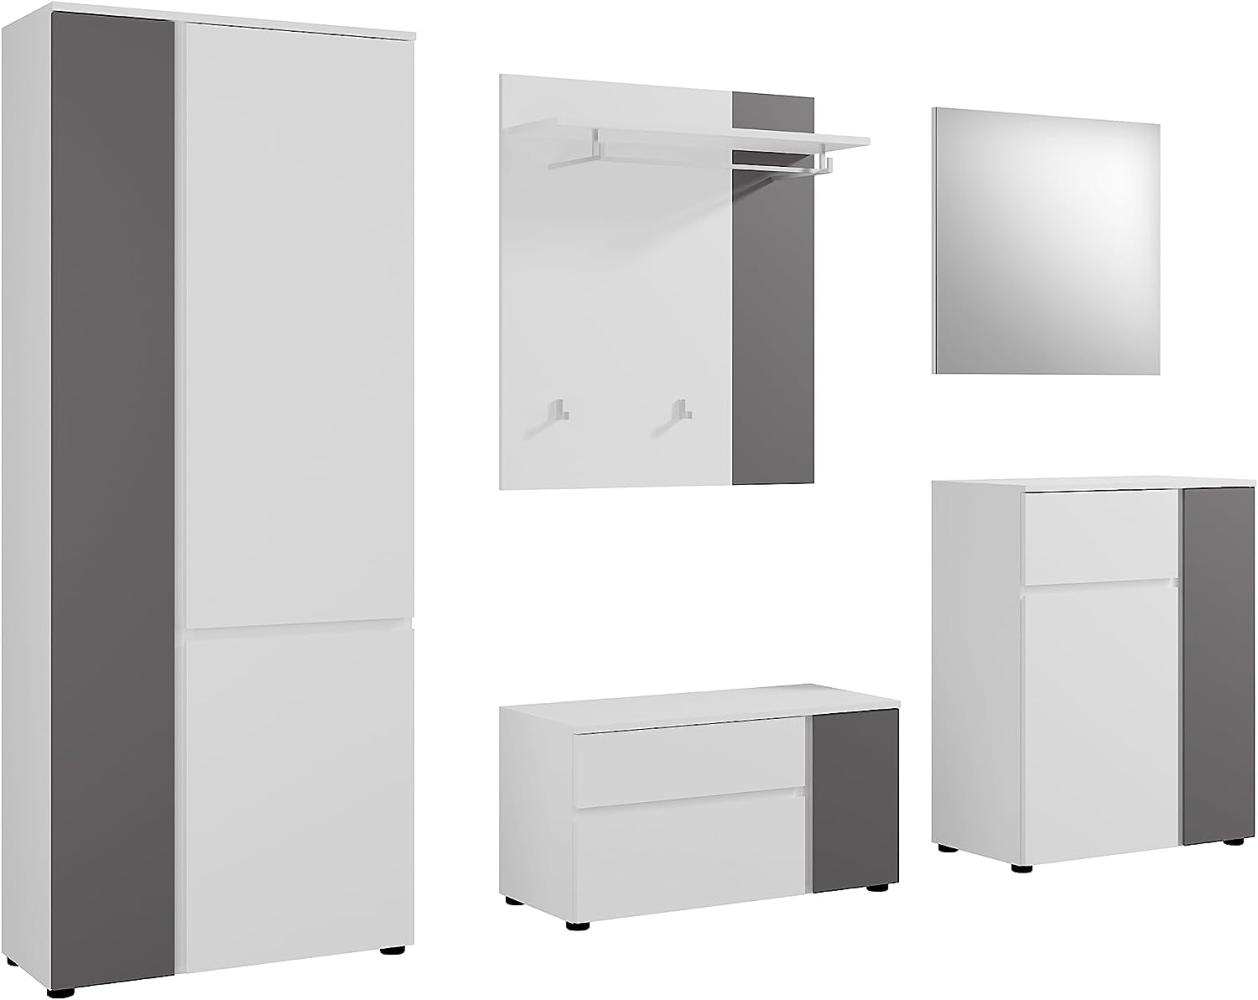 Garderobe Set 5-teilig Kato in weiß und grau 265 cm Bild 1